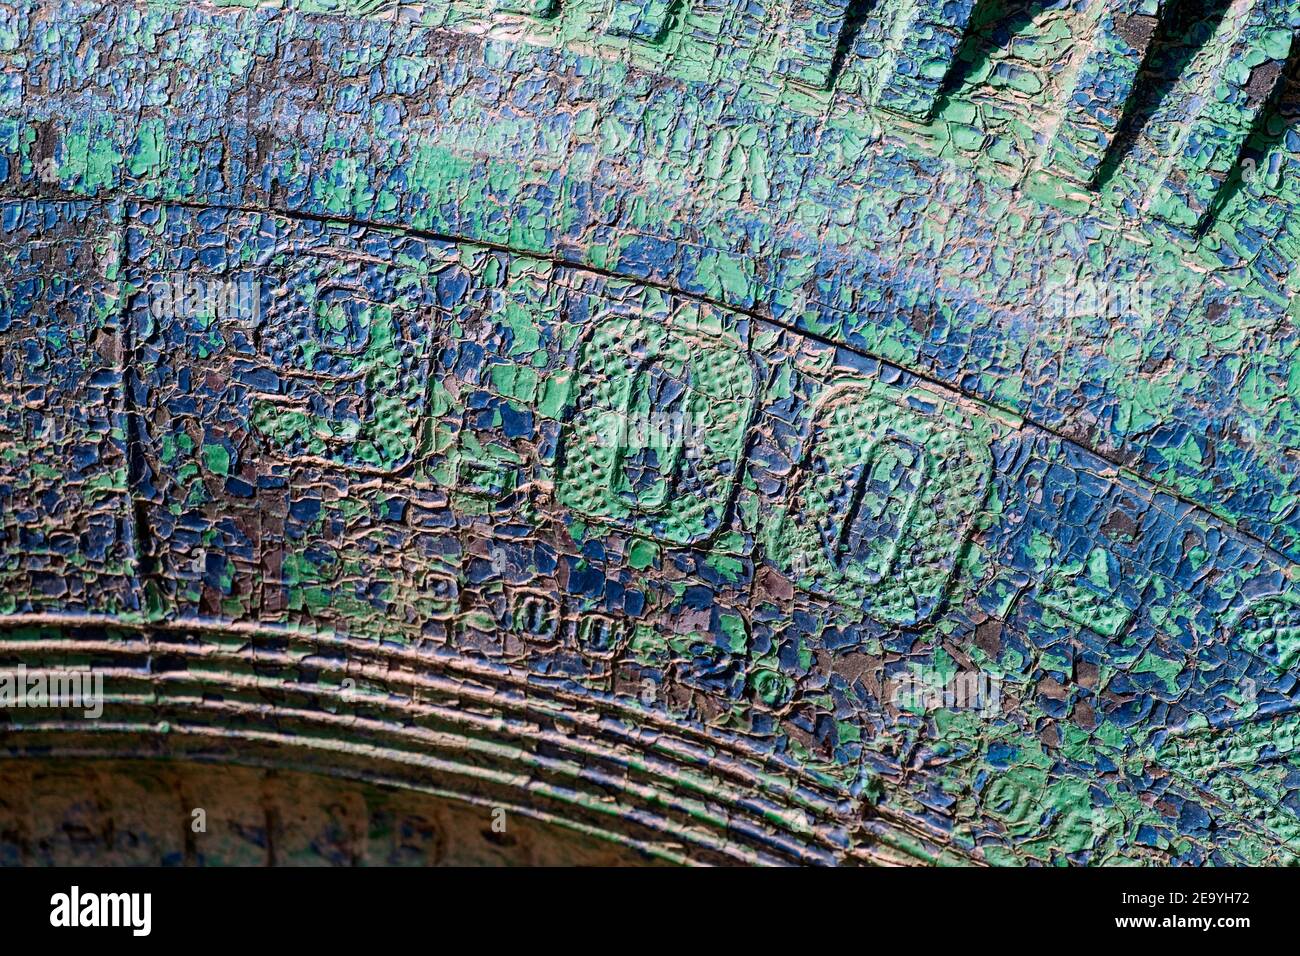 Textura de un neumático viejo con pintura azul-verde agrietada Foto de stock